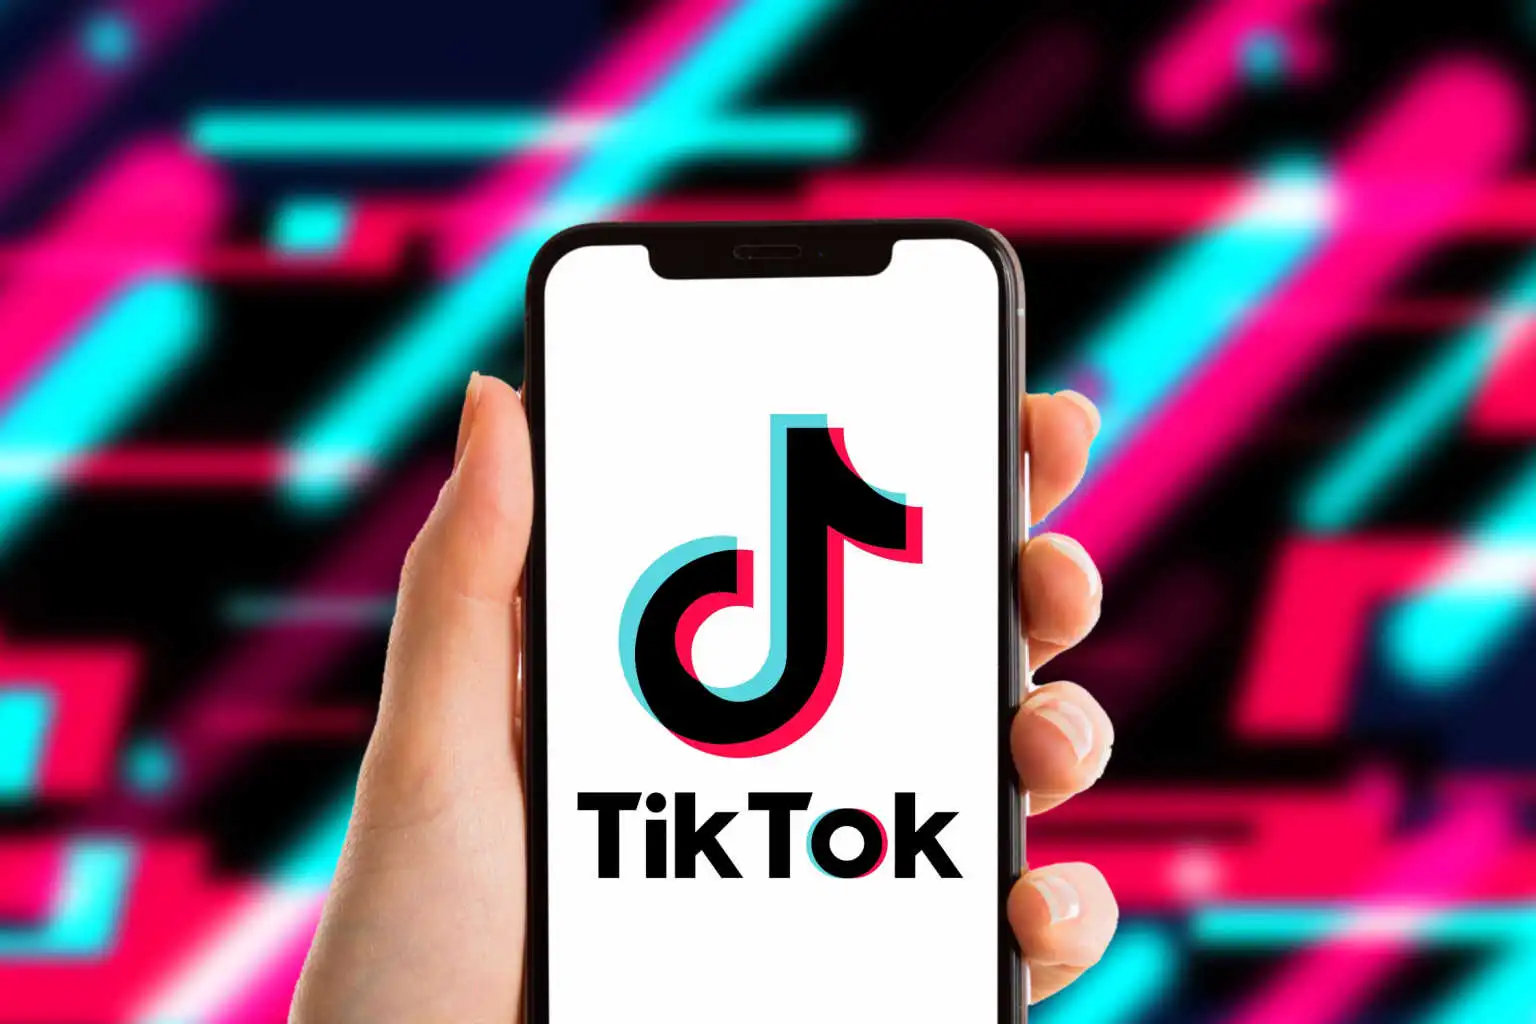 How To Get Tiktok Stream Key Easily